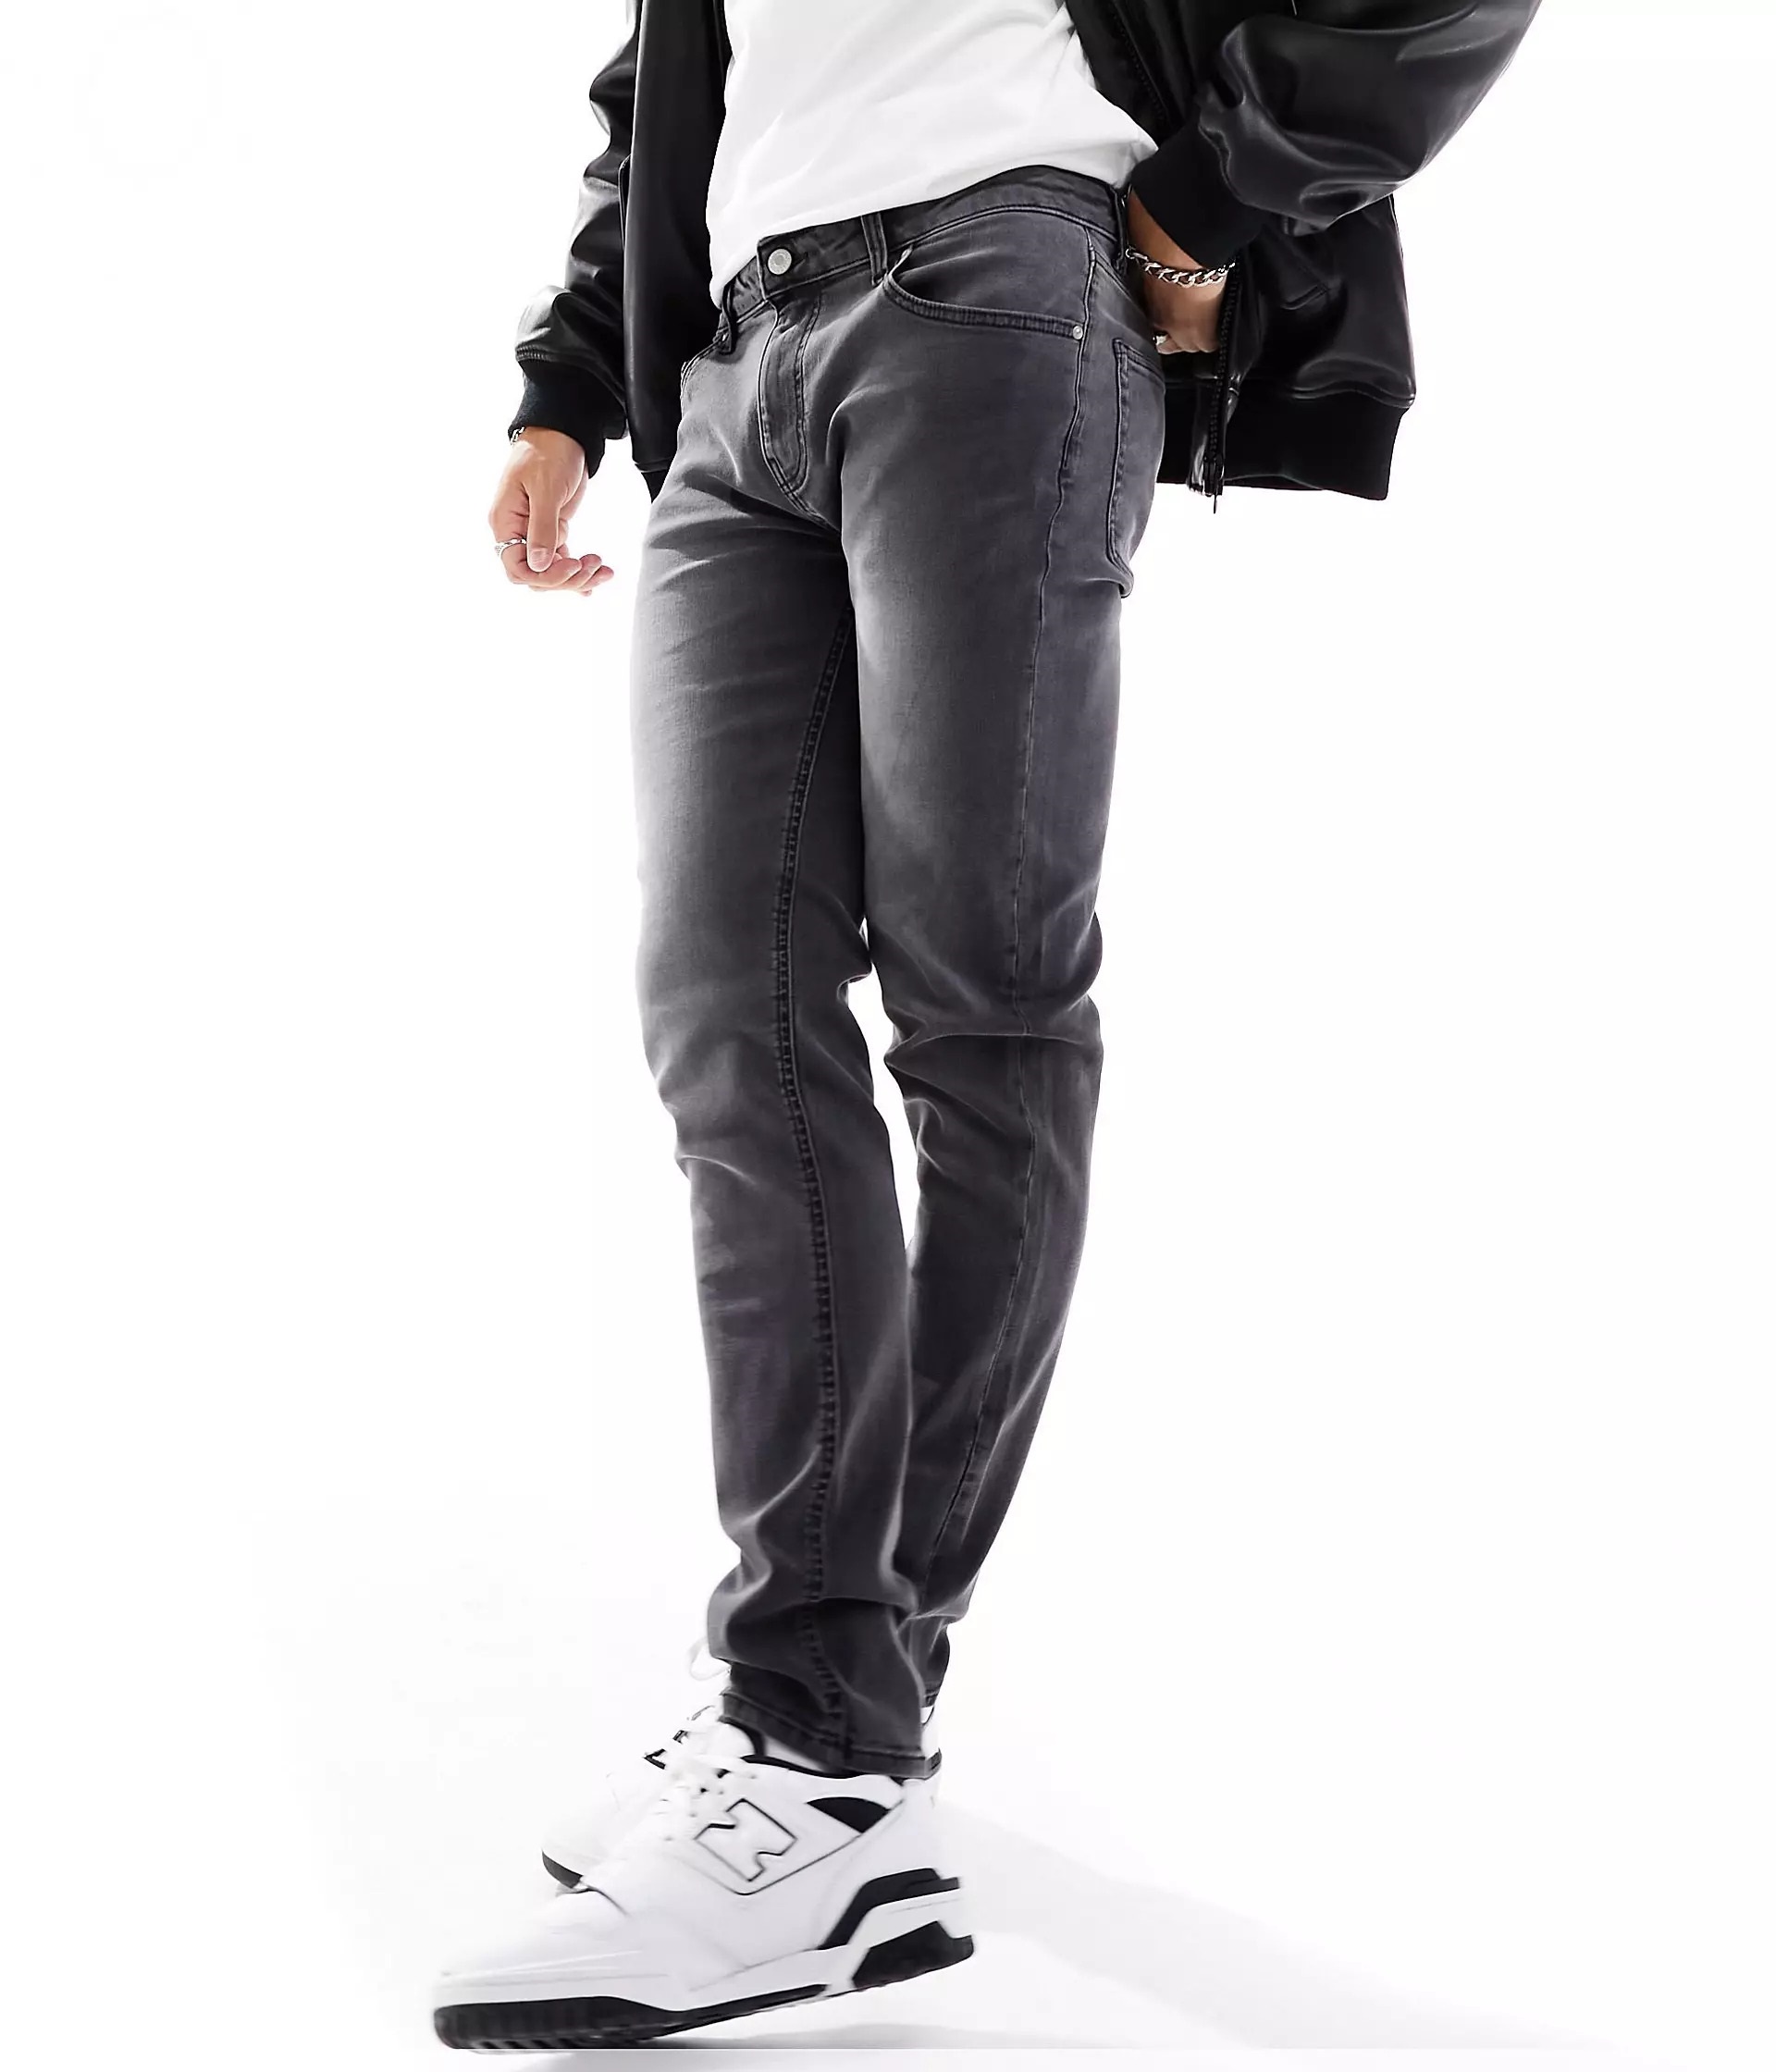 Джинсы Asos Design Skinny, серый джинсы скинни стрейч marks